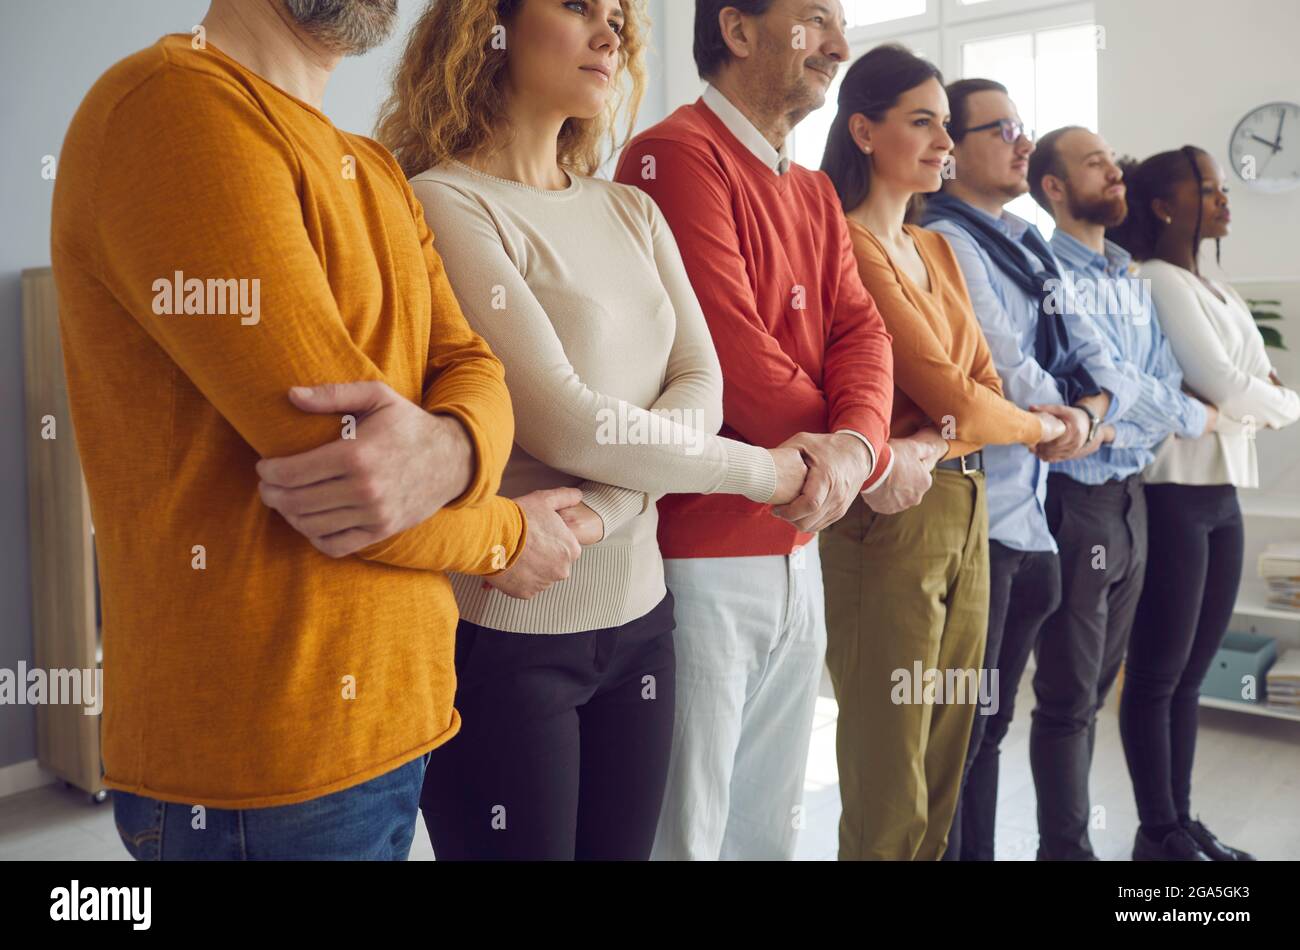 Gruppe von verschiedenen Menschen, die in Reihe stehen und die Hände halten, als Konzept der Unterstützung durch die Gemeinschaft Stockfoto